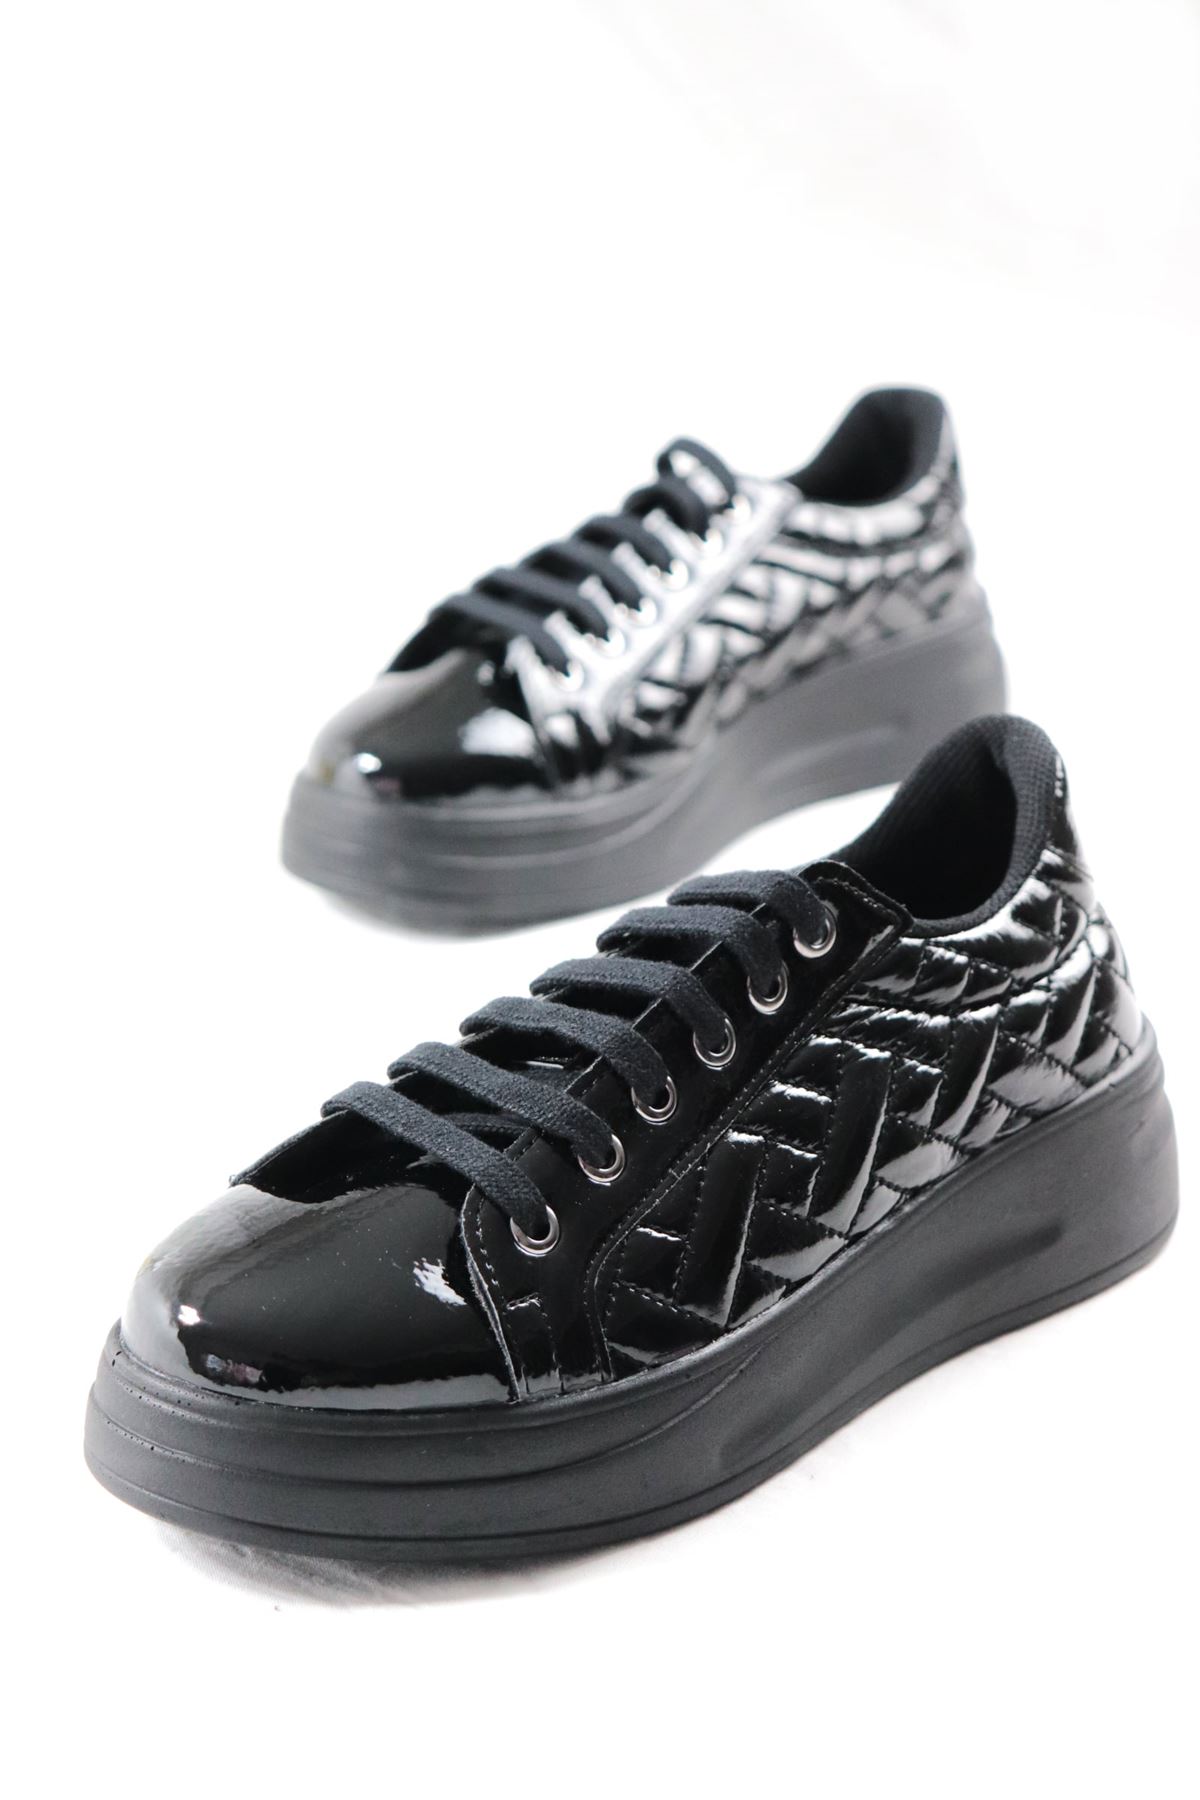 Trendayakkabı - Siyah Rugan Kadın Spor Ayakkabı 